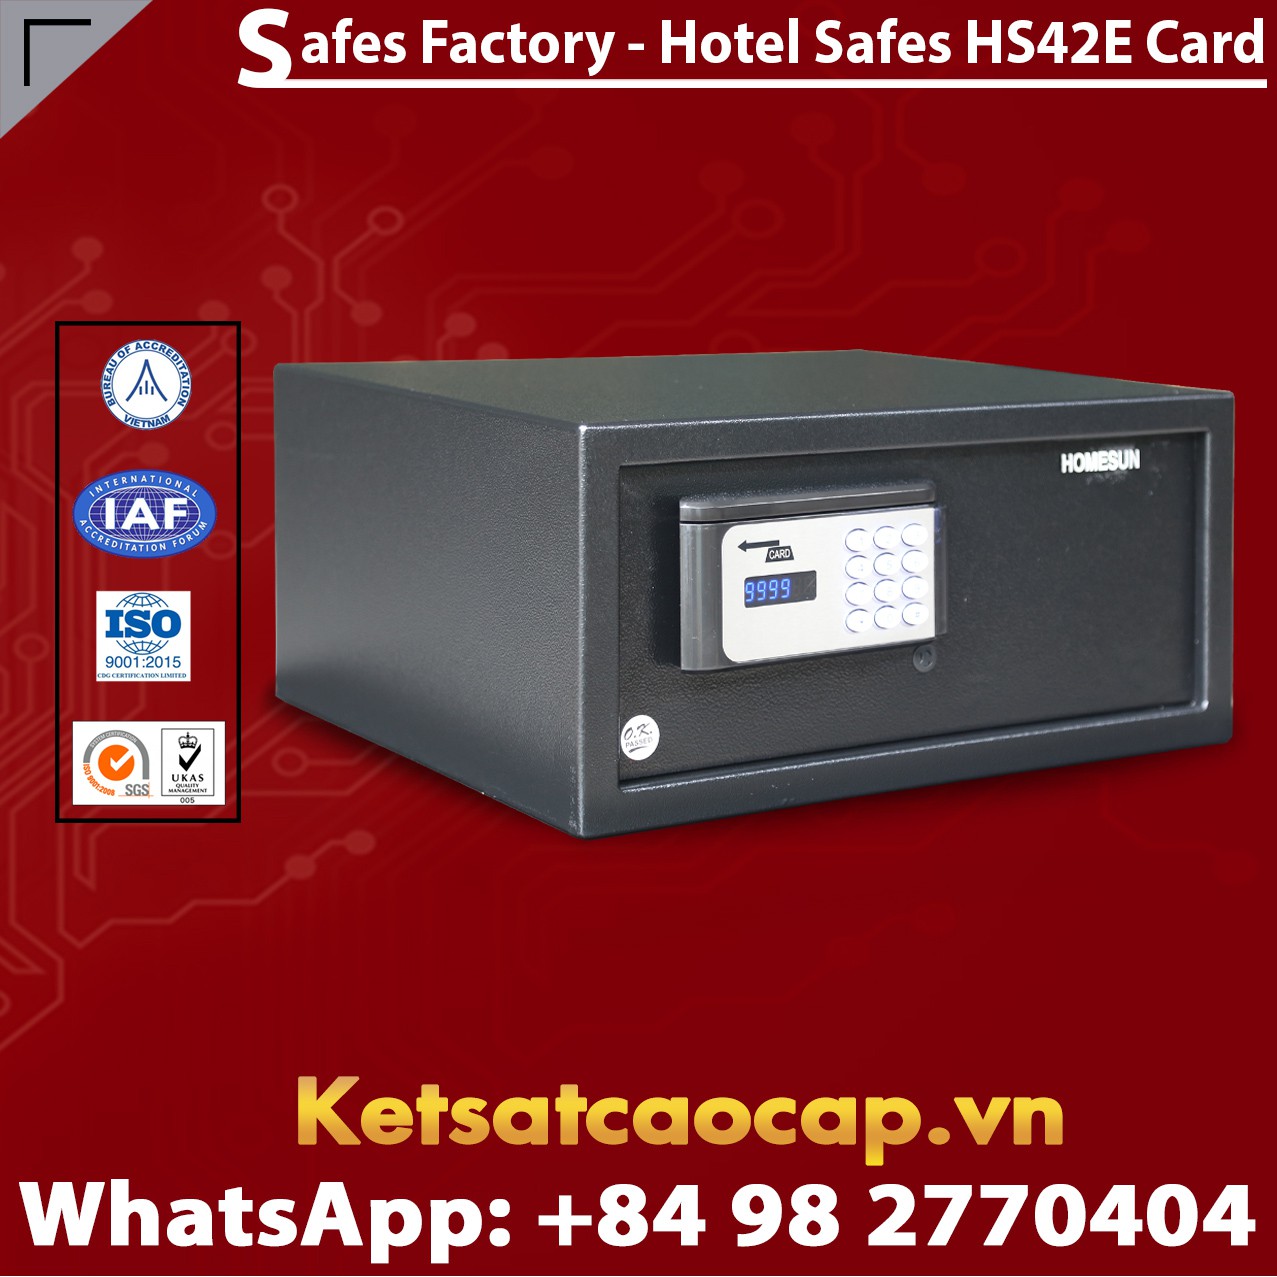 Két Sắt Khách Sạn Hotel Safes HOMESUN HS42 E Card